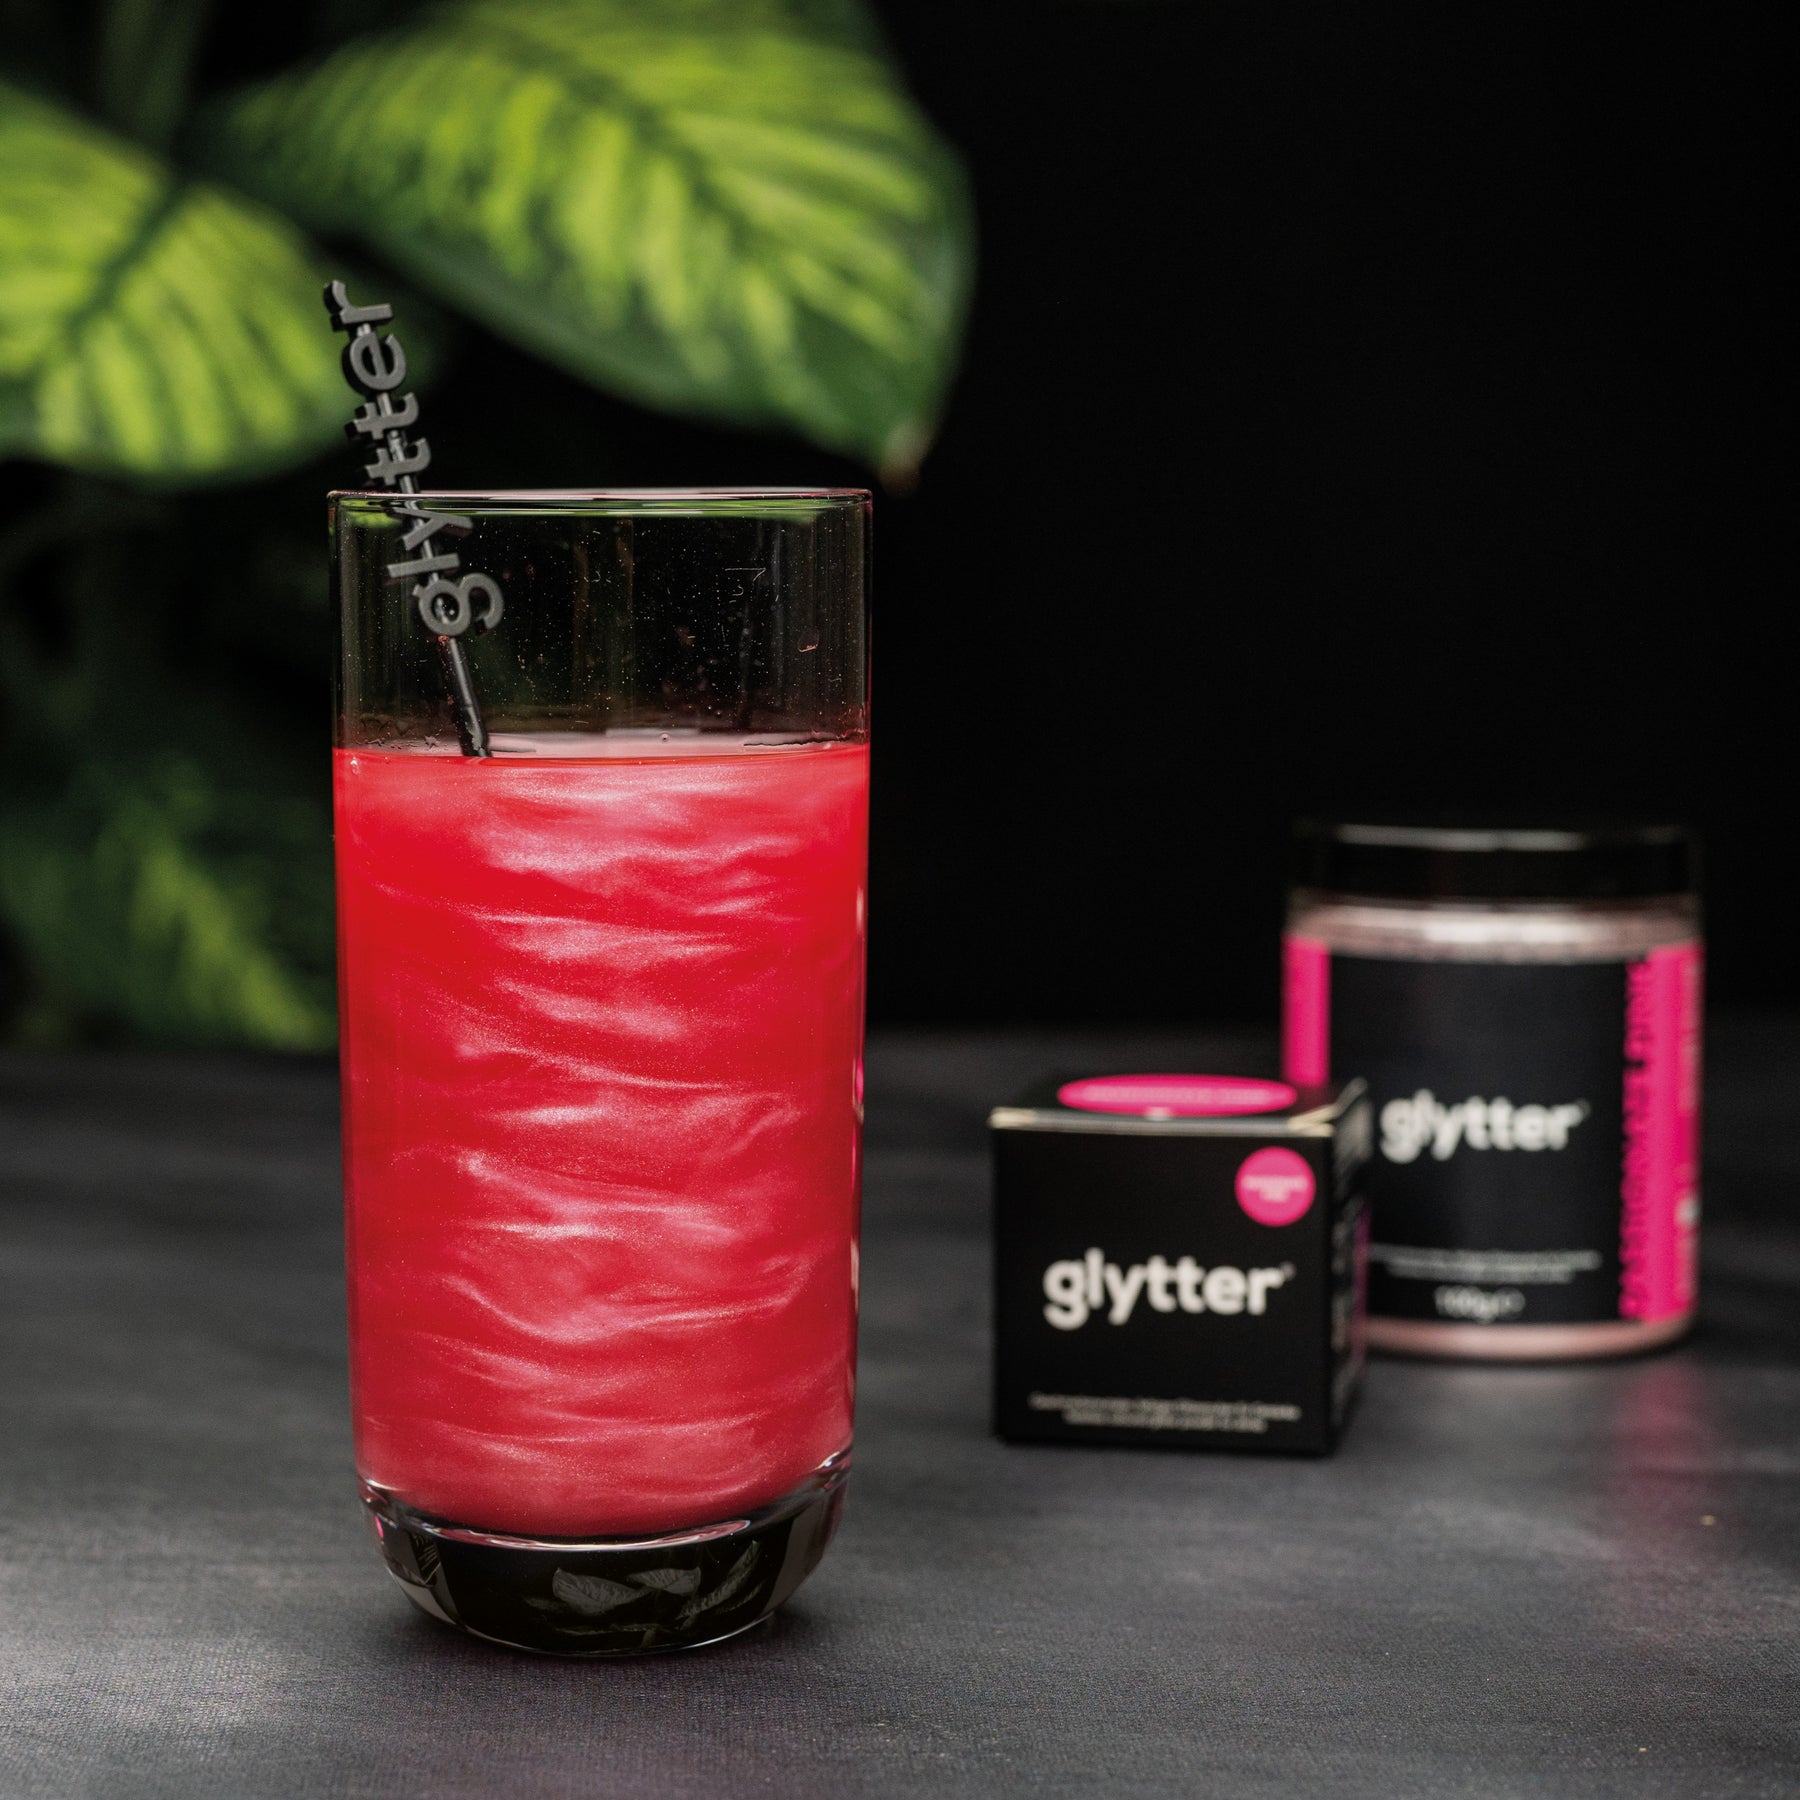 Farbiges Glitzerpulver für Getränke - Pink (100g) - Vorteilspack